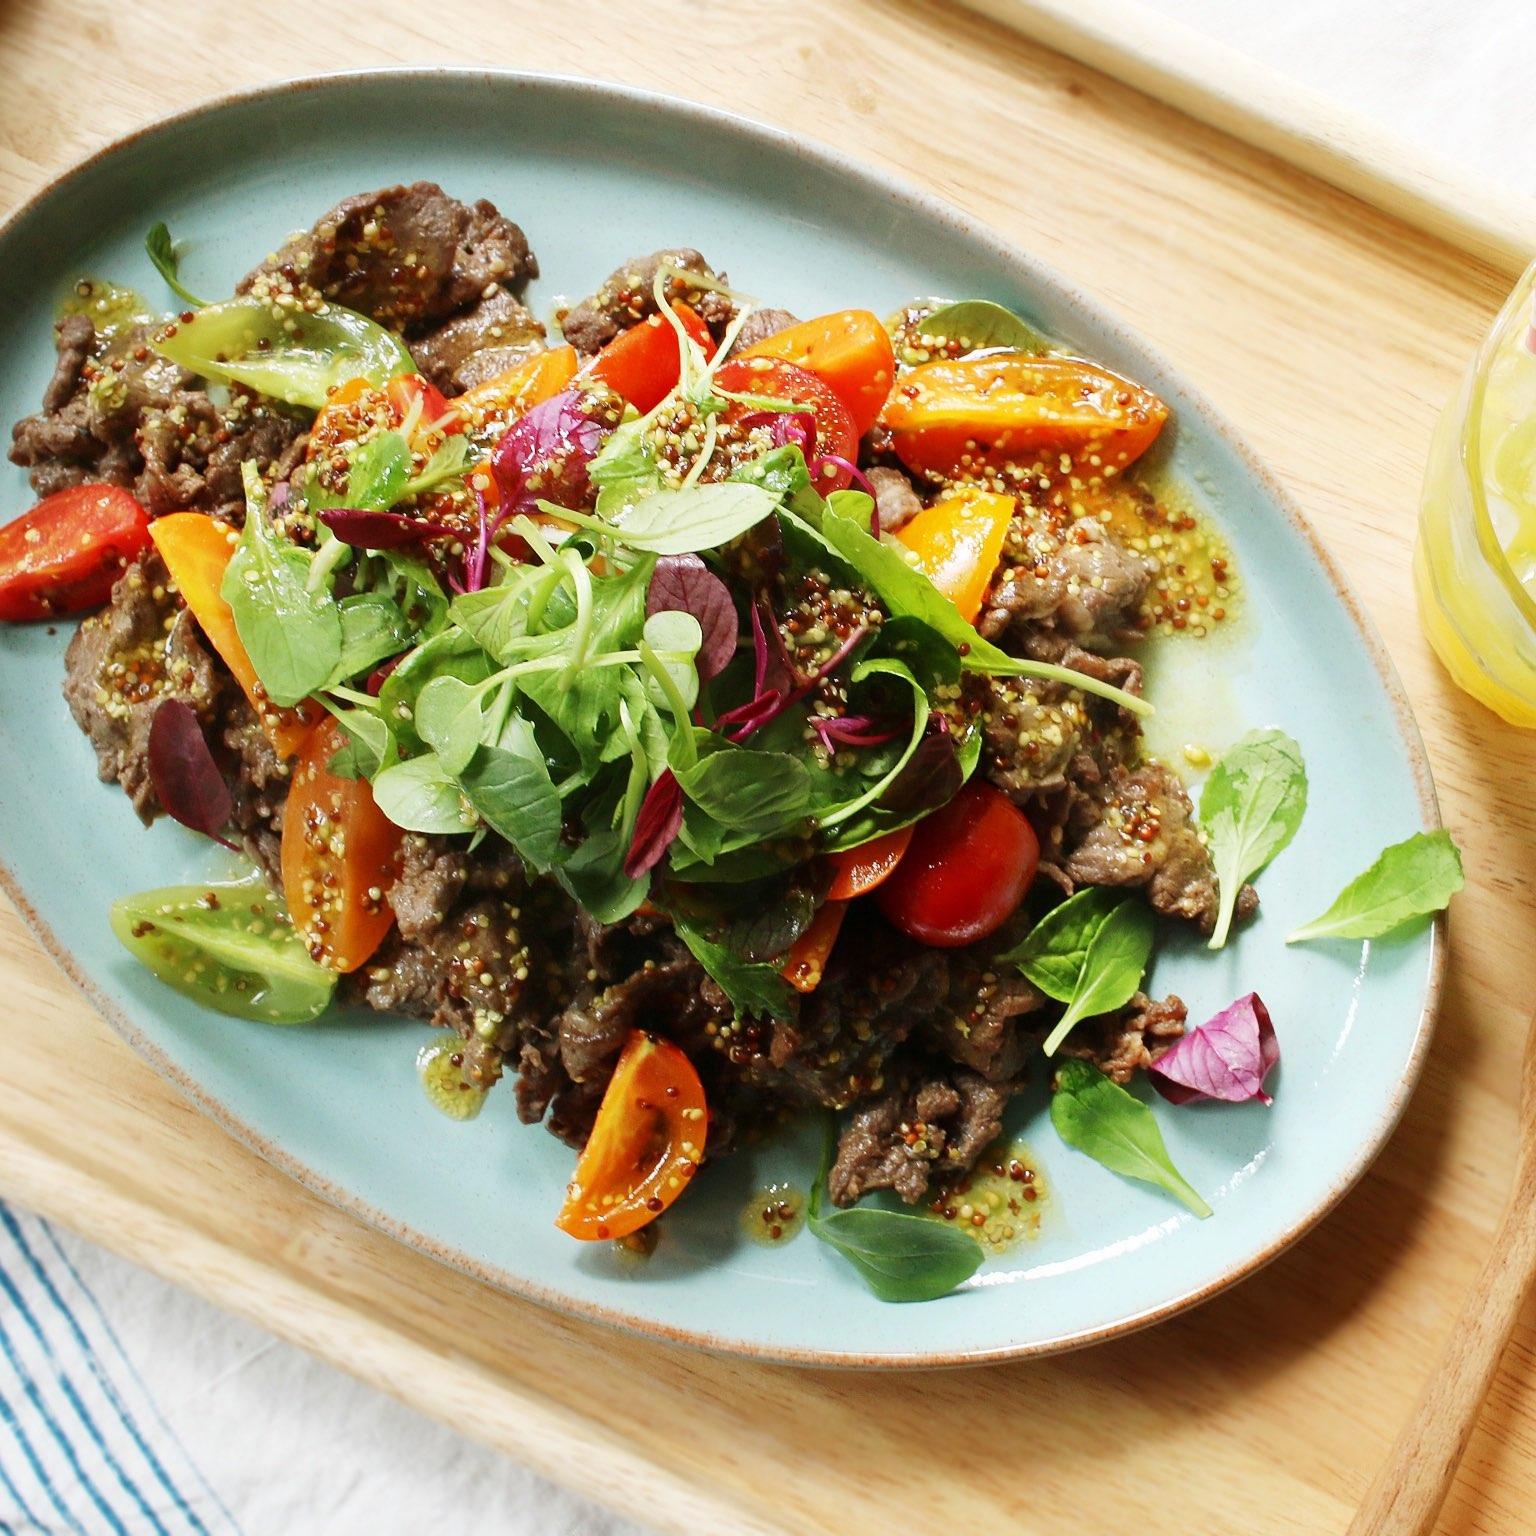  Salad thịt bò Wagyu thơm ngon giảm cân hiệu quả